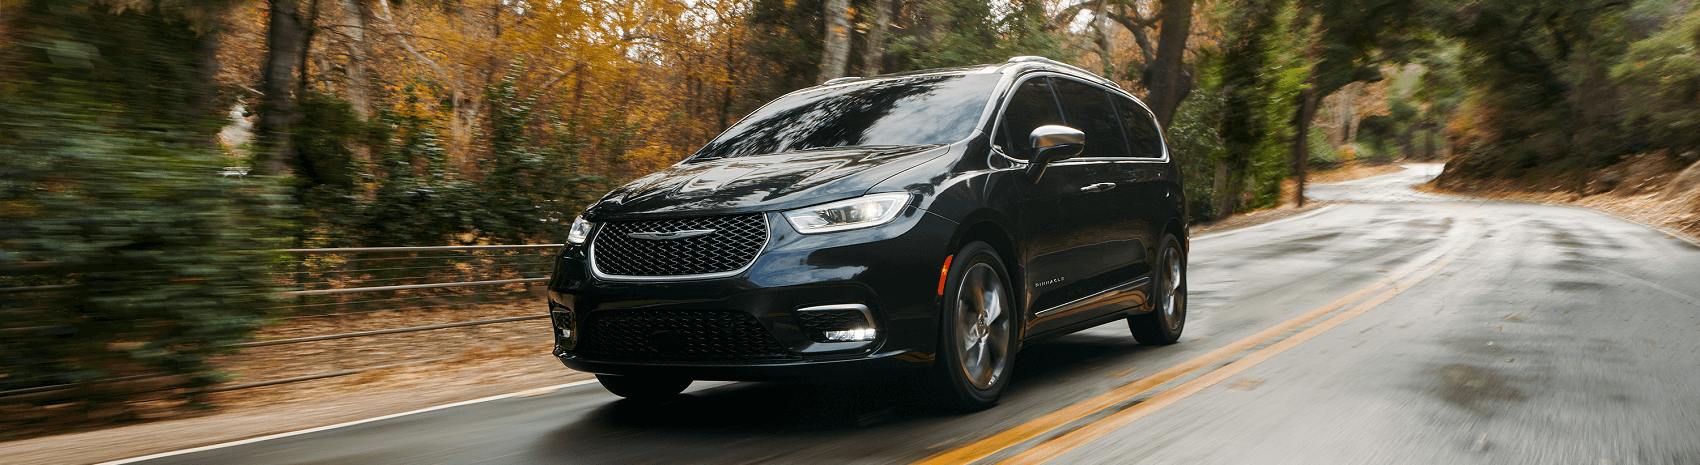 Chrysler Pacifica Reviews Clarkston MI